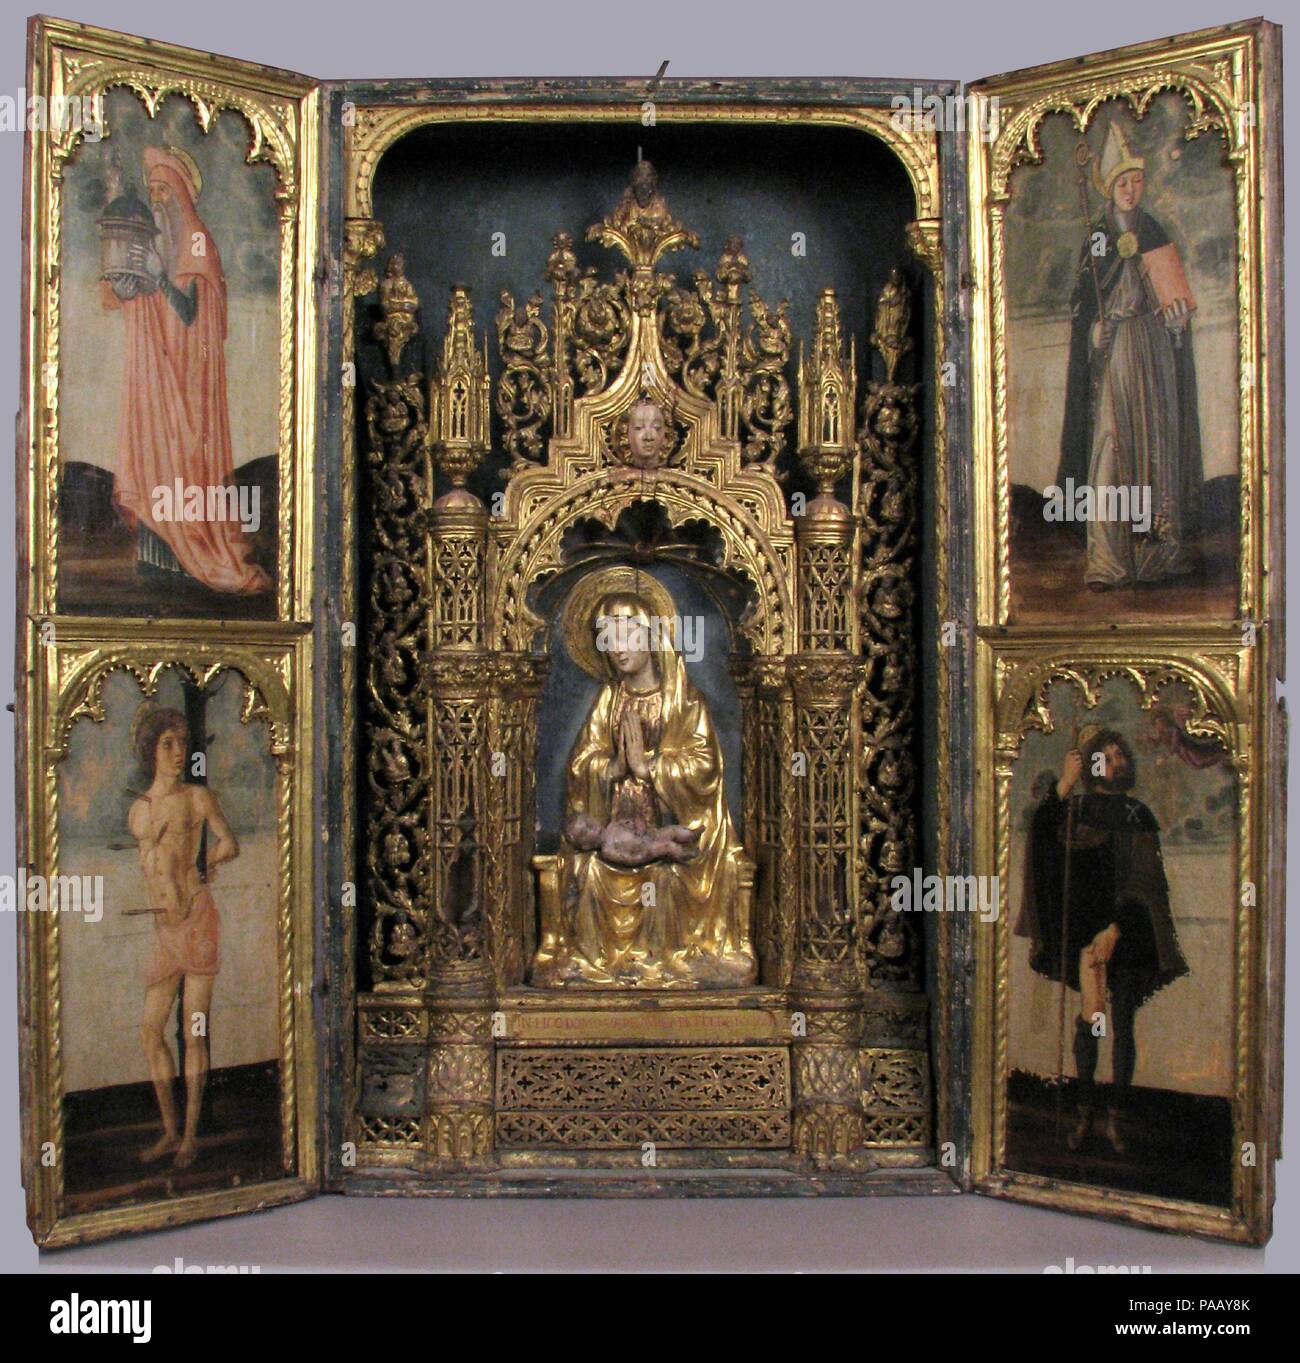 Altare Santuario con quattro Santi. Artista: italiano (Veneto) pittore , terzo quarto del XV secolo. Cultura: Italiano. Dimensioni: in generale (a-armadio con ante chiuse): 49 1/4 x 28 1/2 x 10 1/4 in. (125.1 x 72,4 x 26 cm) complessiva (con alette aperte): 49 1/4 x 56 3/4 x 10 1/4 in. (125.1 x 144.1 x 26 cm) ala sinistra: 49 1/4 x 14 x 1 1/4 in. (125.1 x 35,6 x 3,2 cm) ala destra: 49 1/4 x 14 3/8 x 1 1/4 in. (125.1 x 36,5 x 3,2 cm) Madonna e Bambino: 18 5/16 x 10 3/4 x 3 3/4 in. (46.5 x 27.3 x 9.5 cm). Data: ca. 1450-75. Museo: Metropolitan Museum of Art di New York, Stati Uniti d'America. Foto Stock